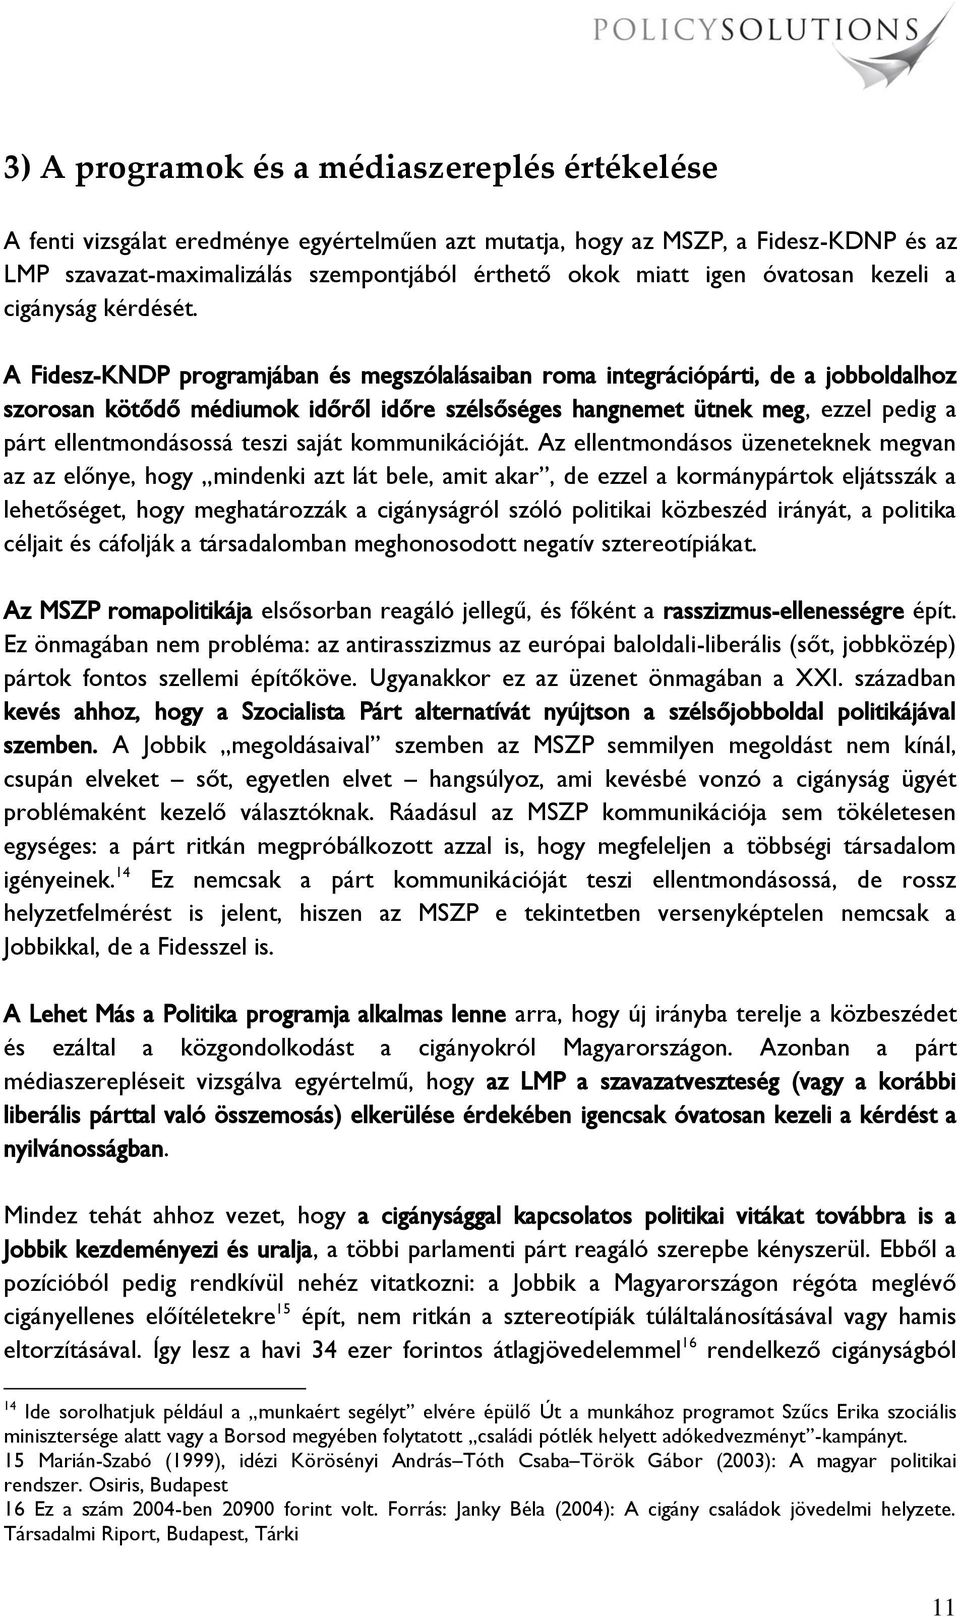 A Fidesz-KNDP programjában és megszólalásaiban roma integrációpárti, de a jobboldalhoz szorosan kötődő médiumok időről időre szélsőséges hangnemet ütnek meg, ezzel pedig a párt ellentmondásossá teszi